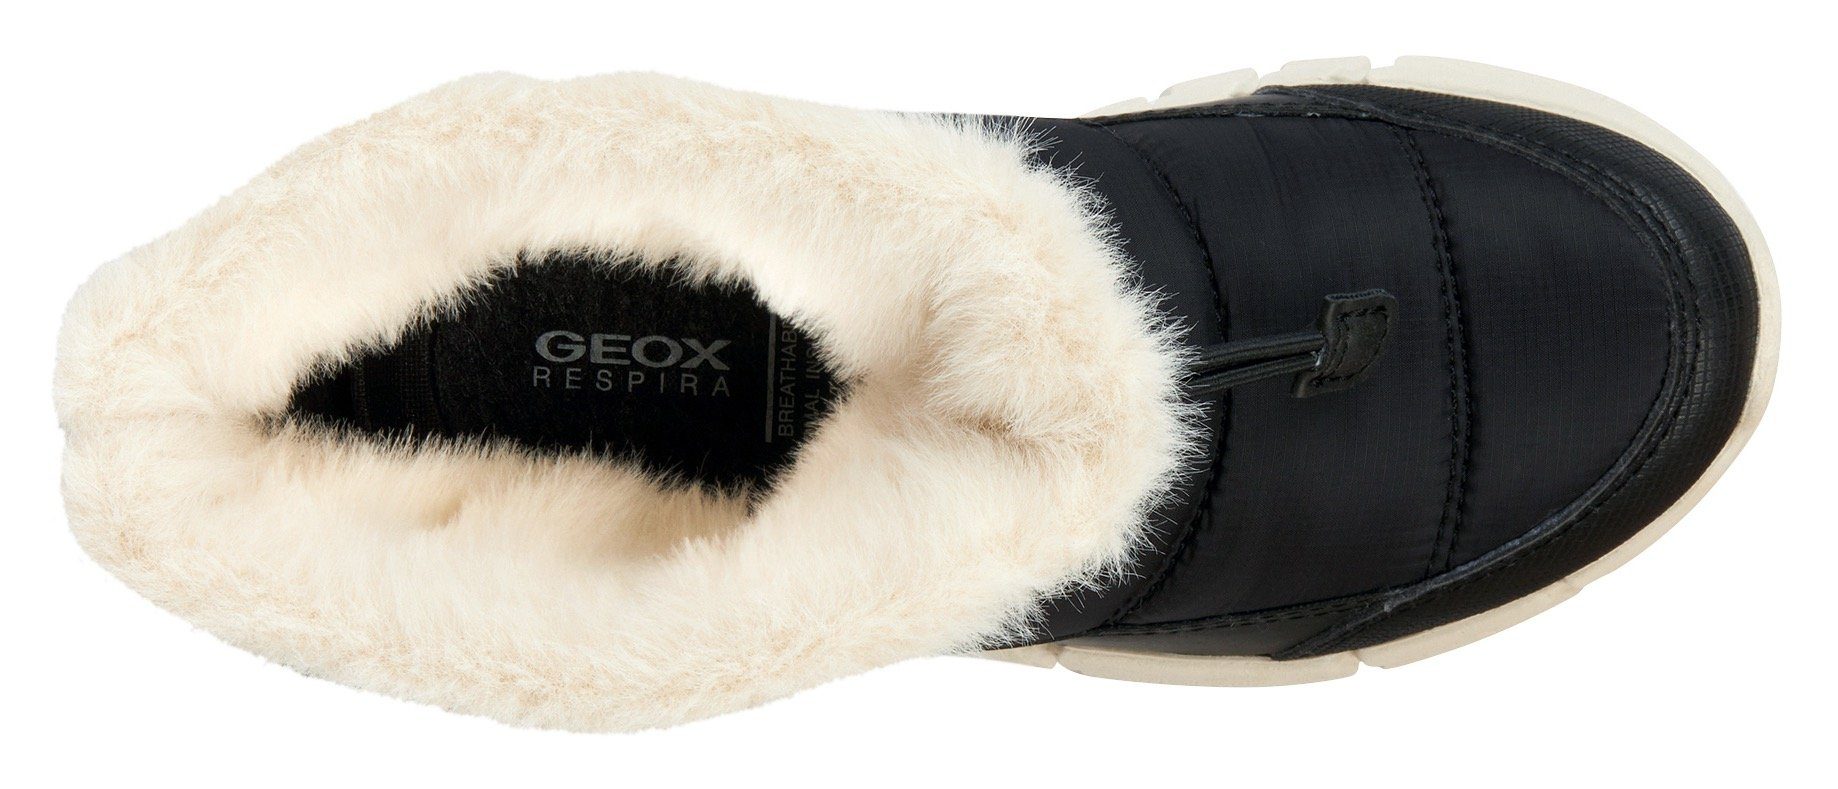 Geox J FLEXYPER GIRL B ABX TEX-Ausstattung schwarz mit Winterstiefel